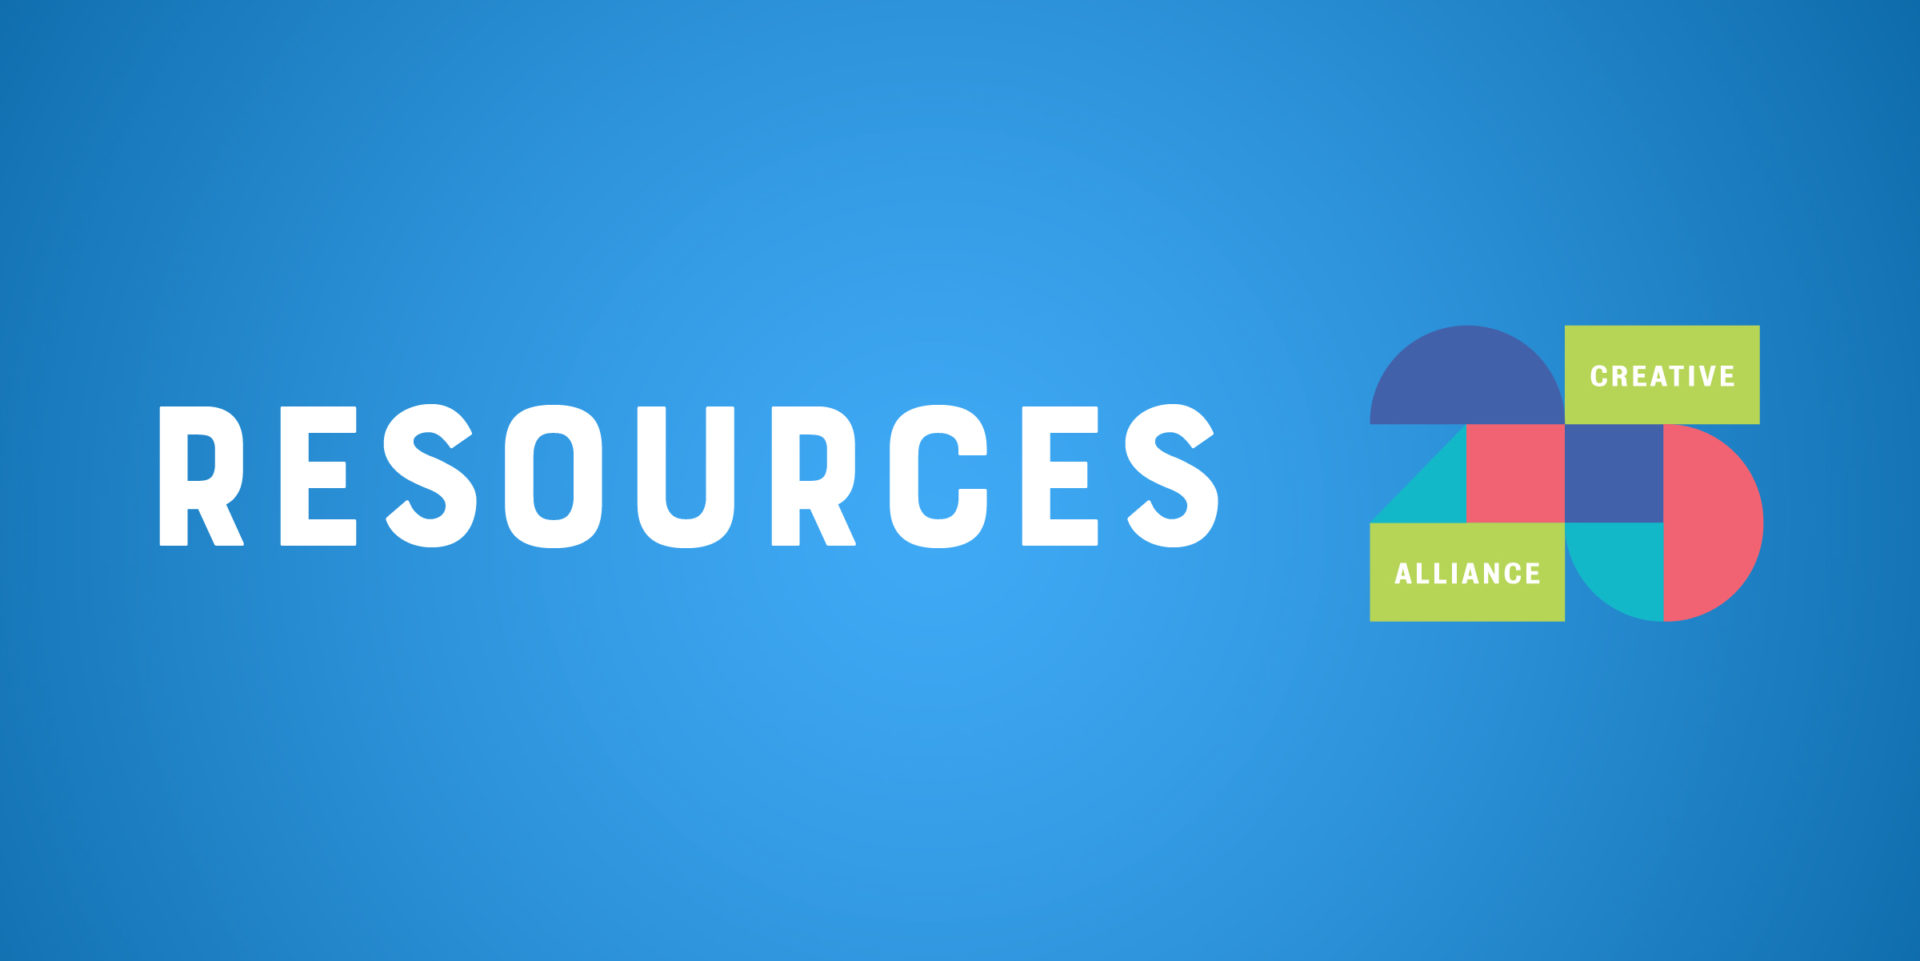 Creative Alliance | Resources Header